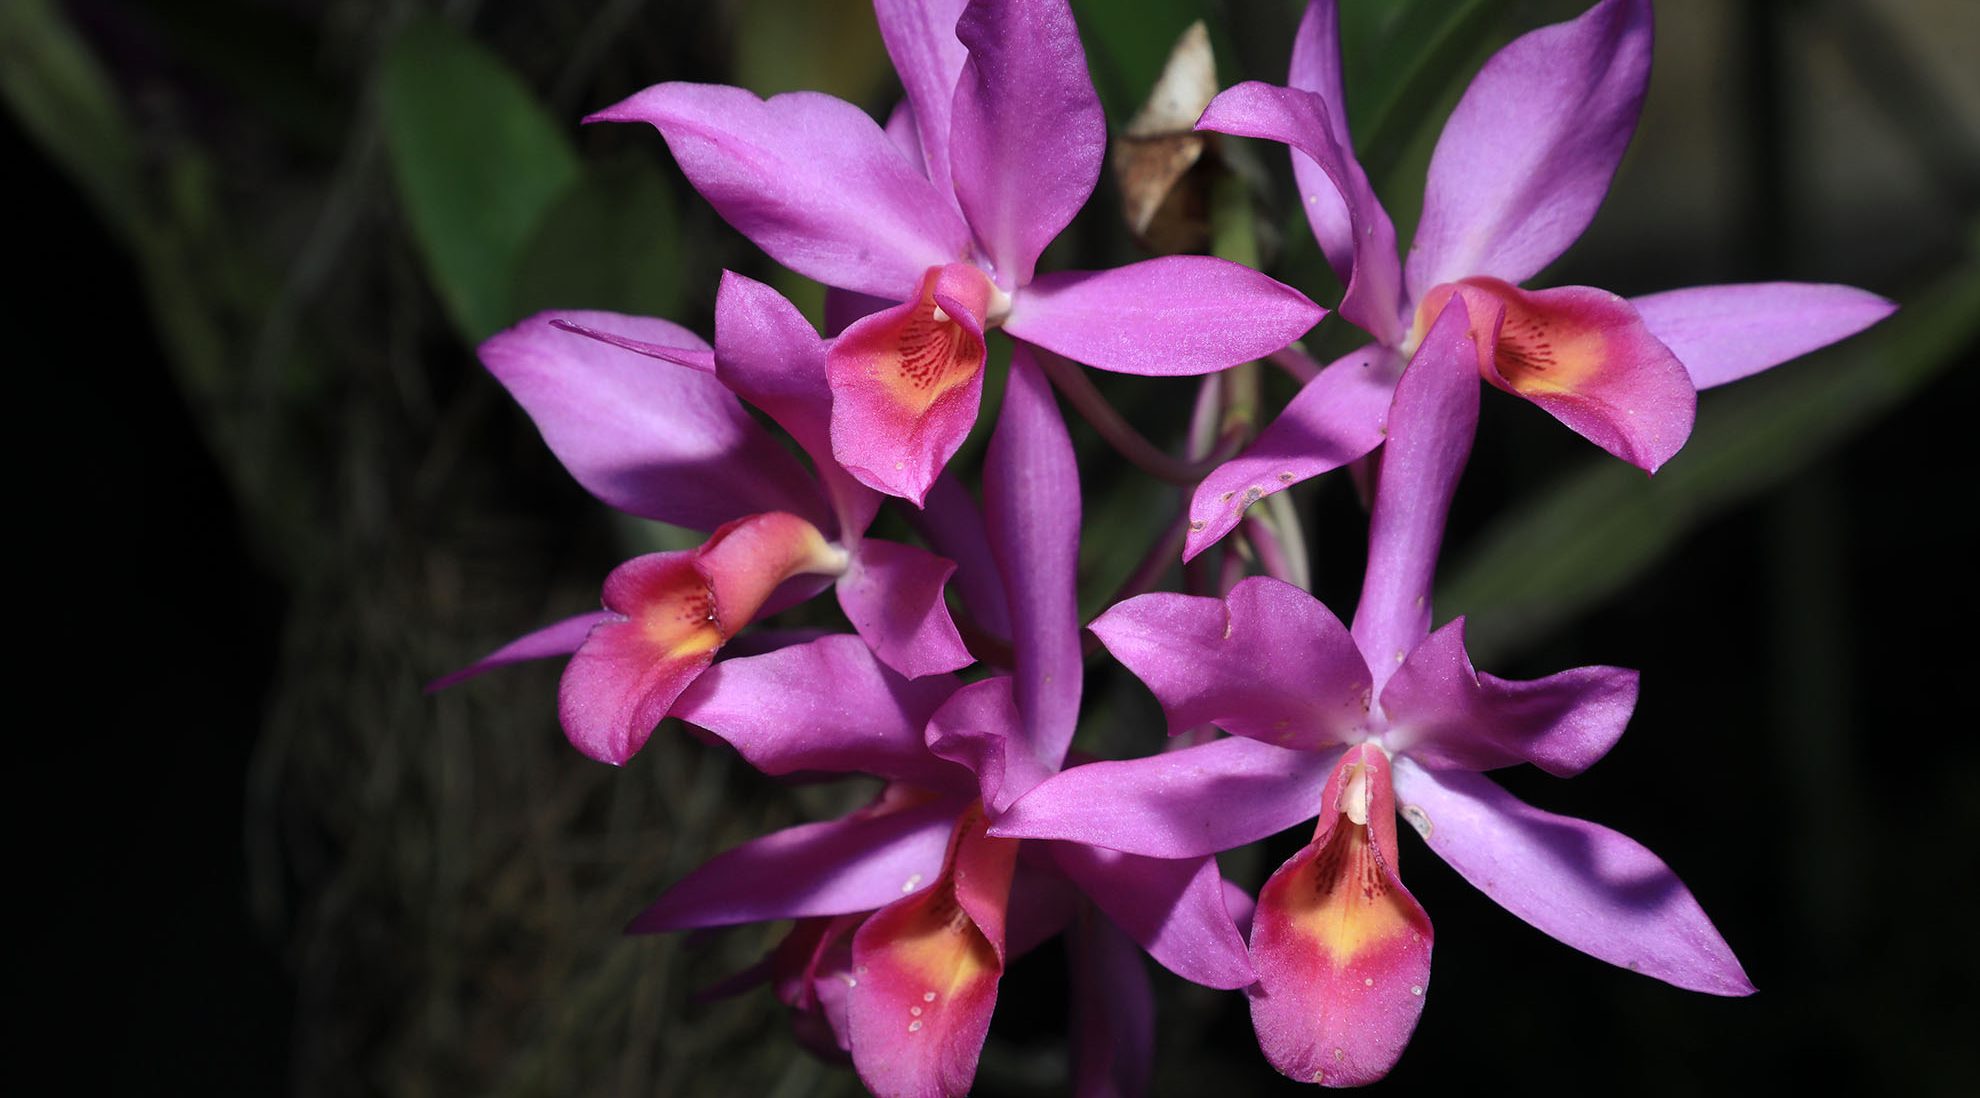 Orquídeas: su belleza las condena a la muerte - Diario El Salvador